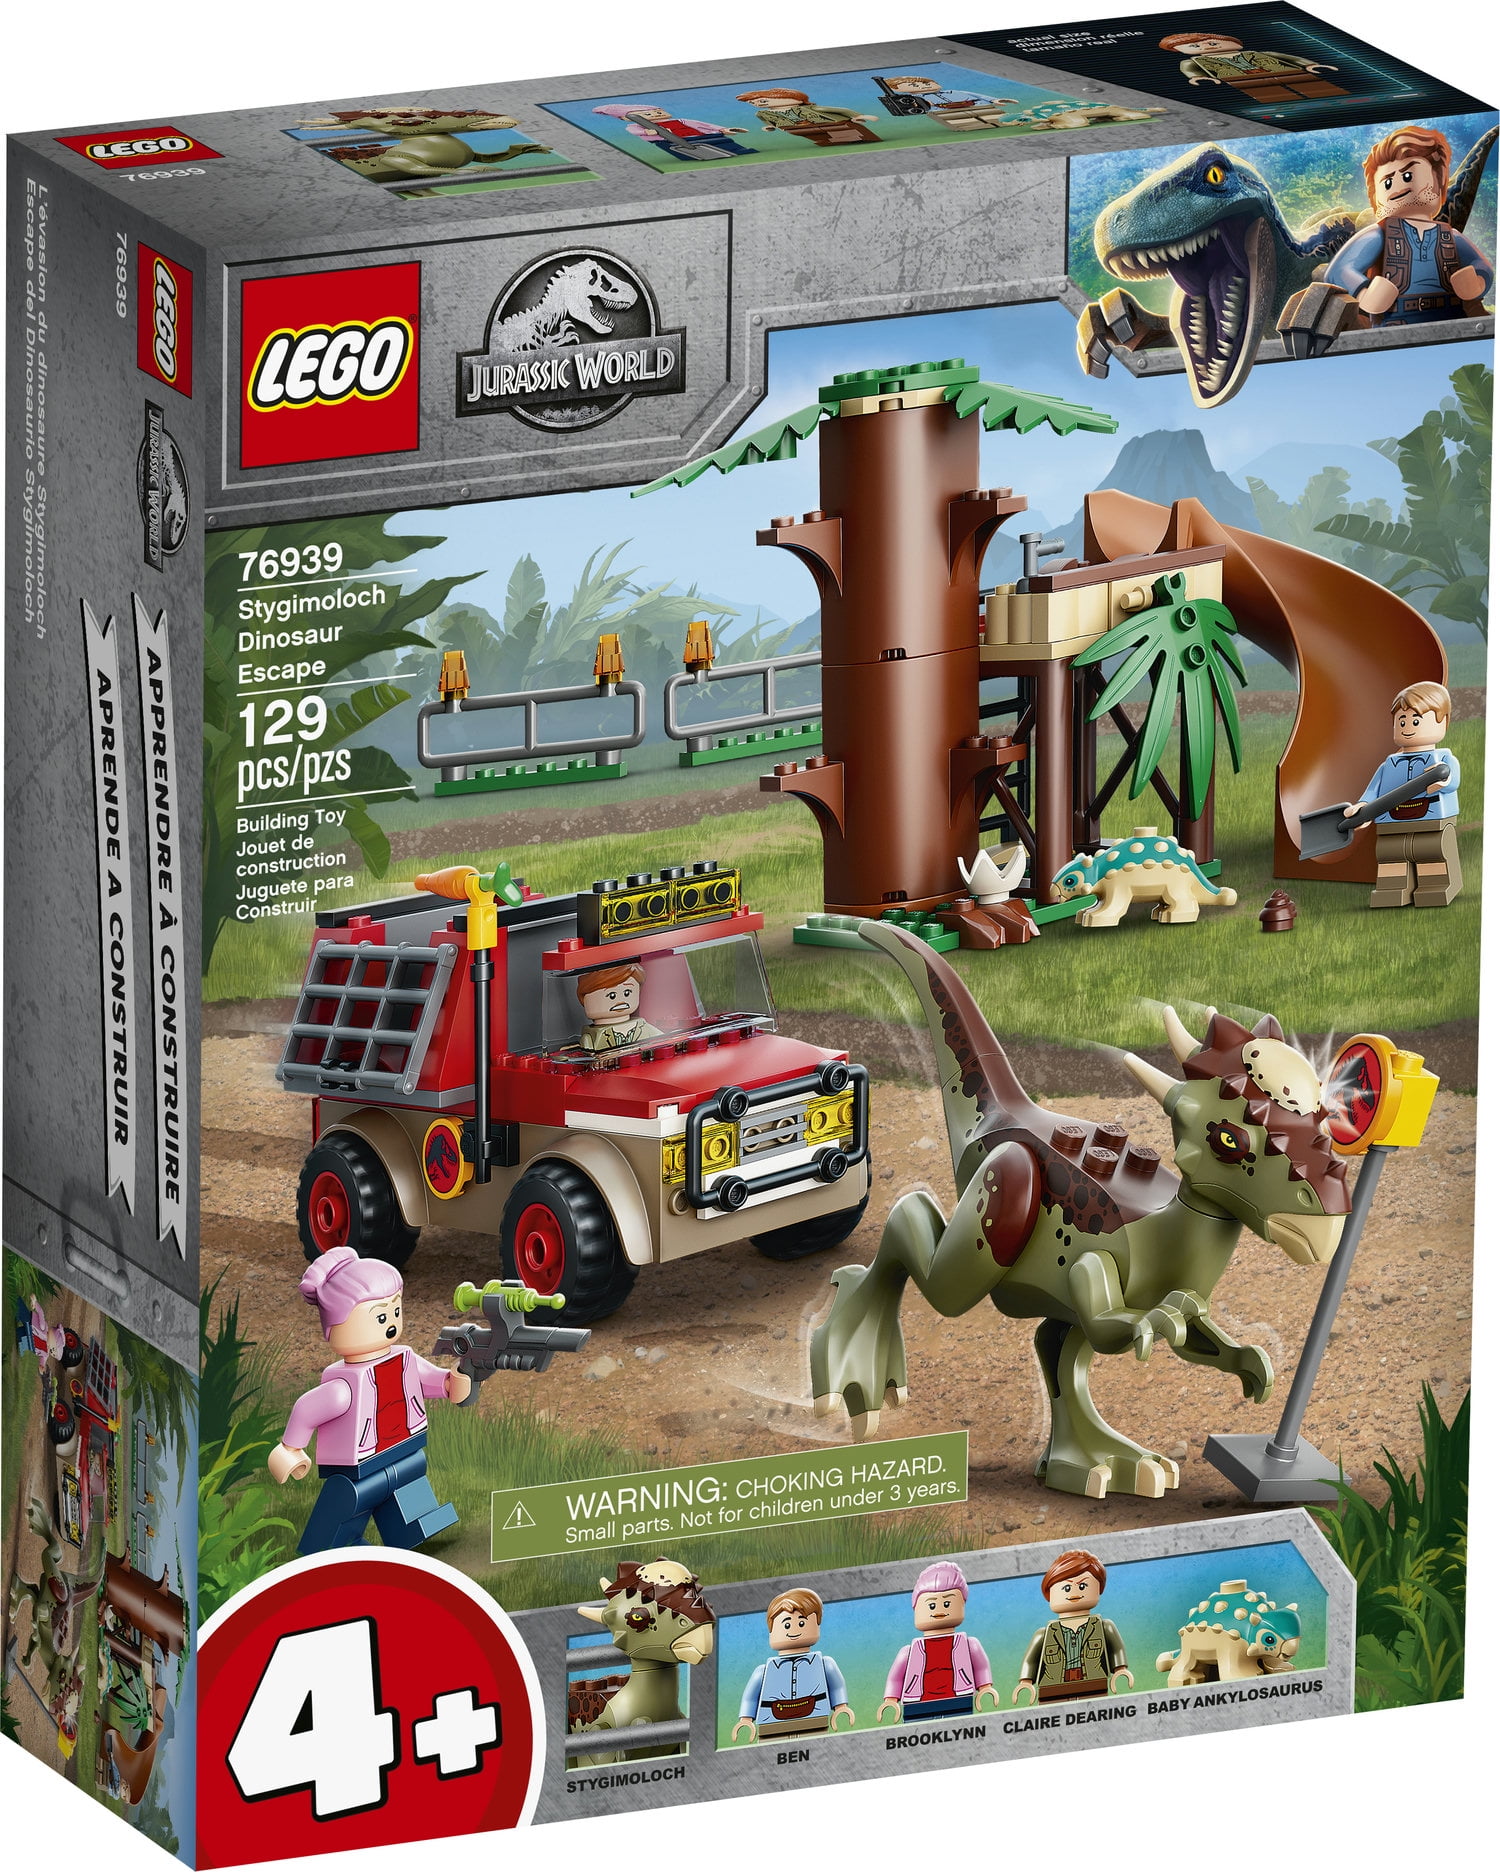 Underinddel personale Kan ikke lide LEGO Jurassic World Stygimoloch Dinosaur Escape 76939 - Walmart.com